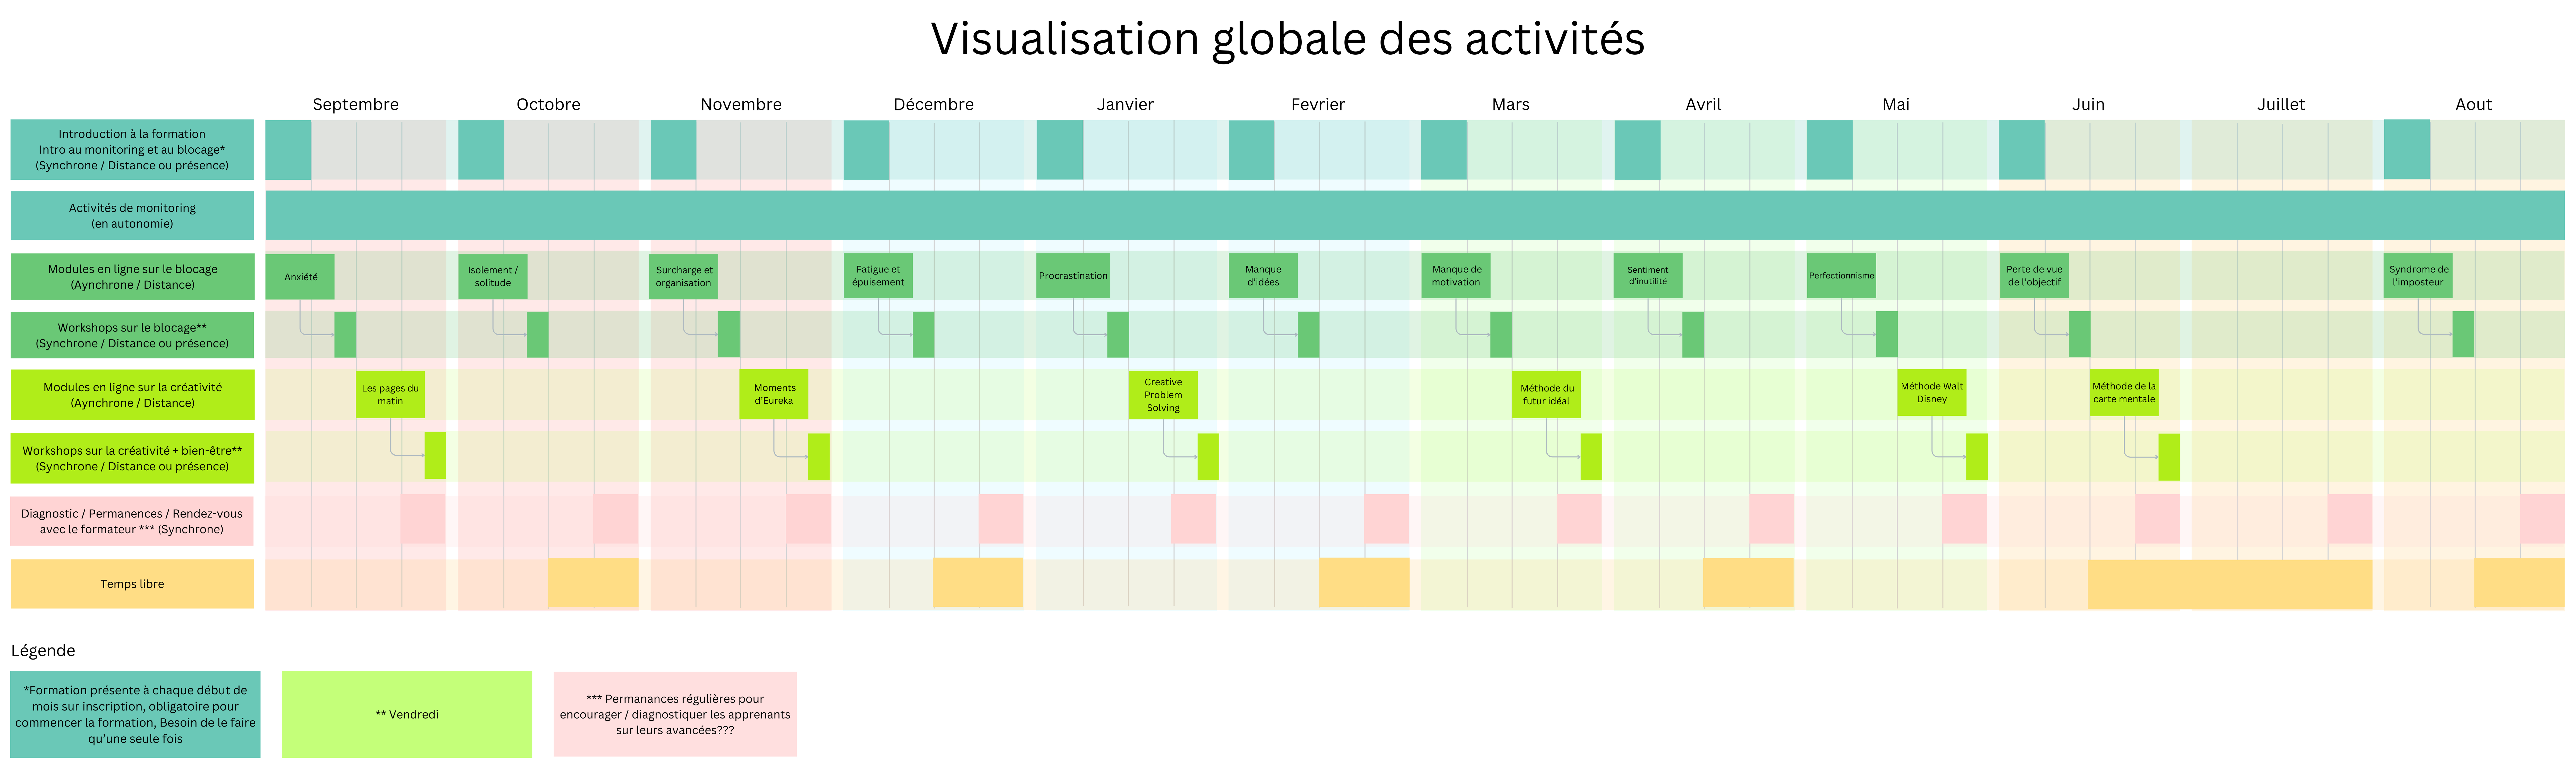 Visualisation globale des activités.png